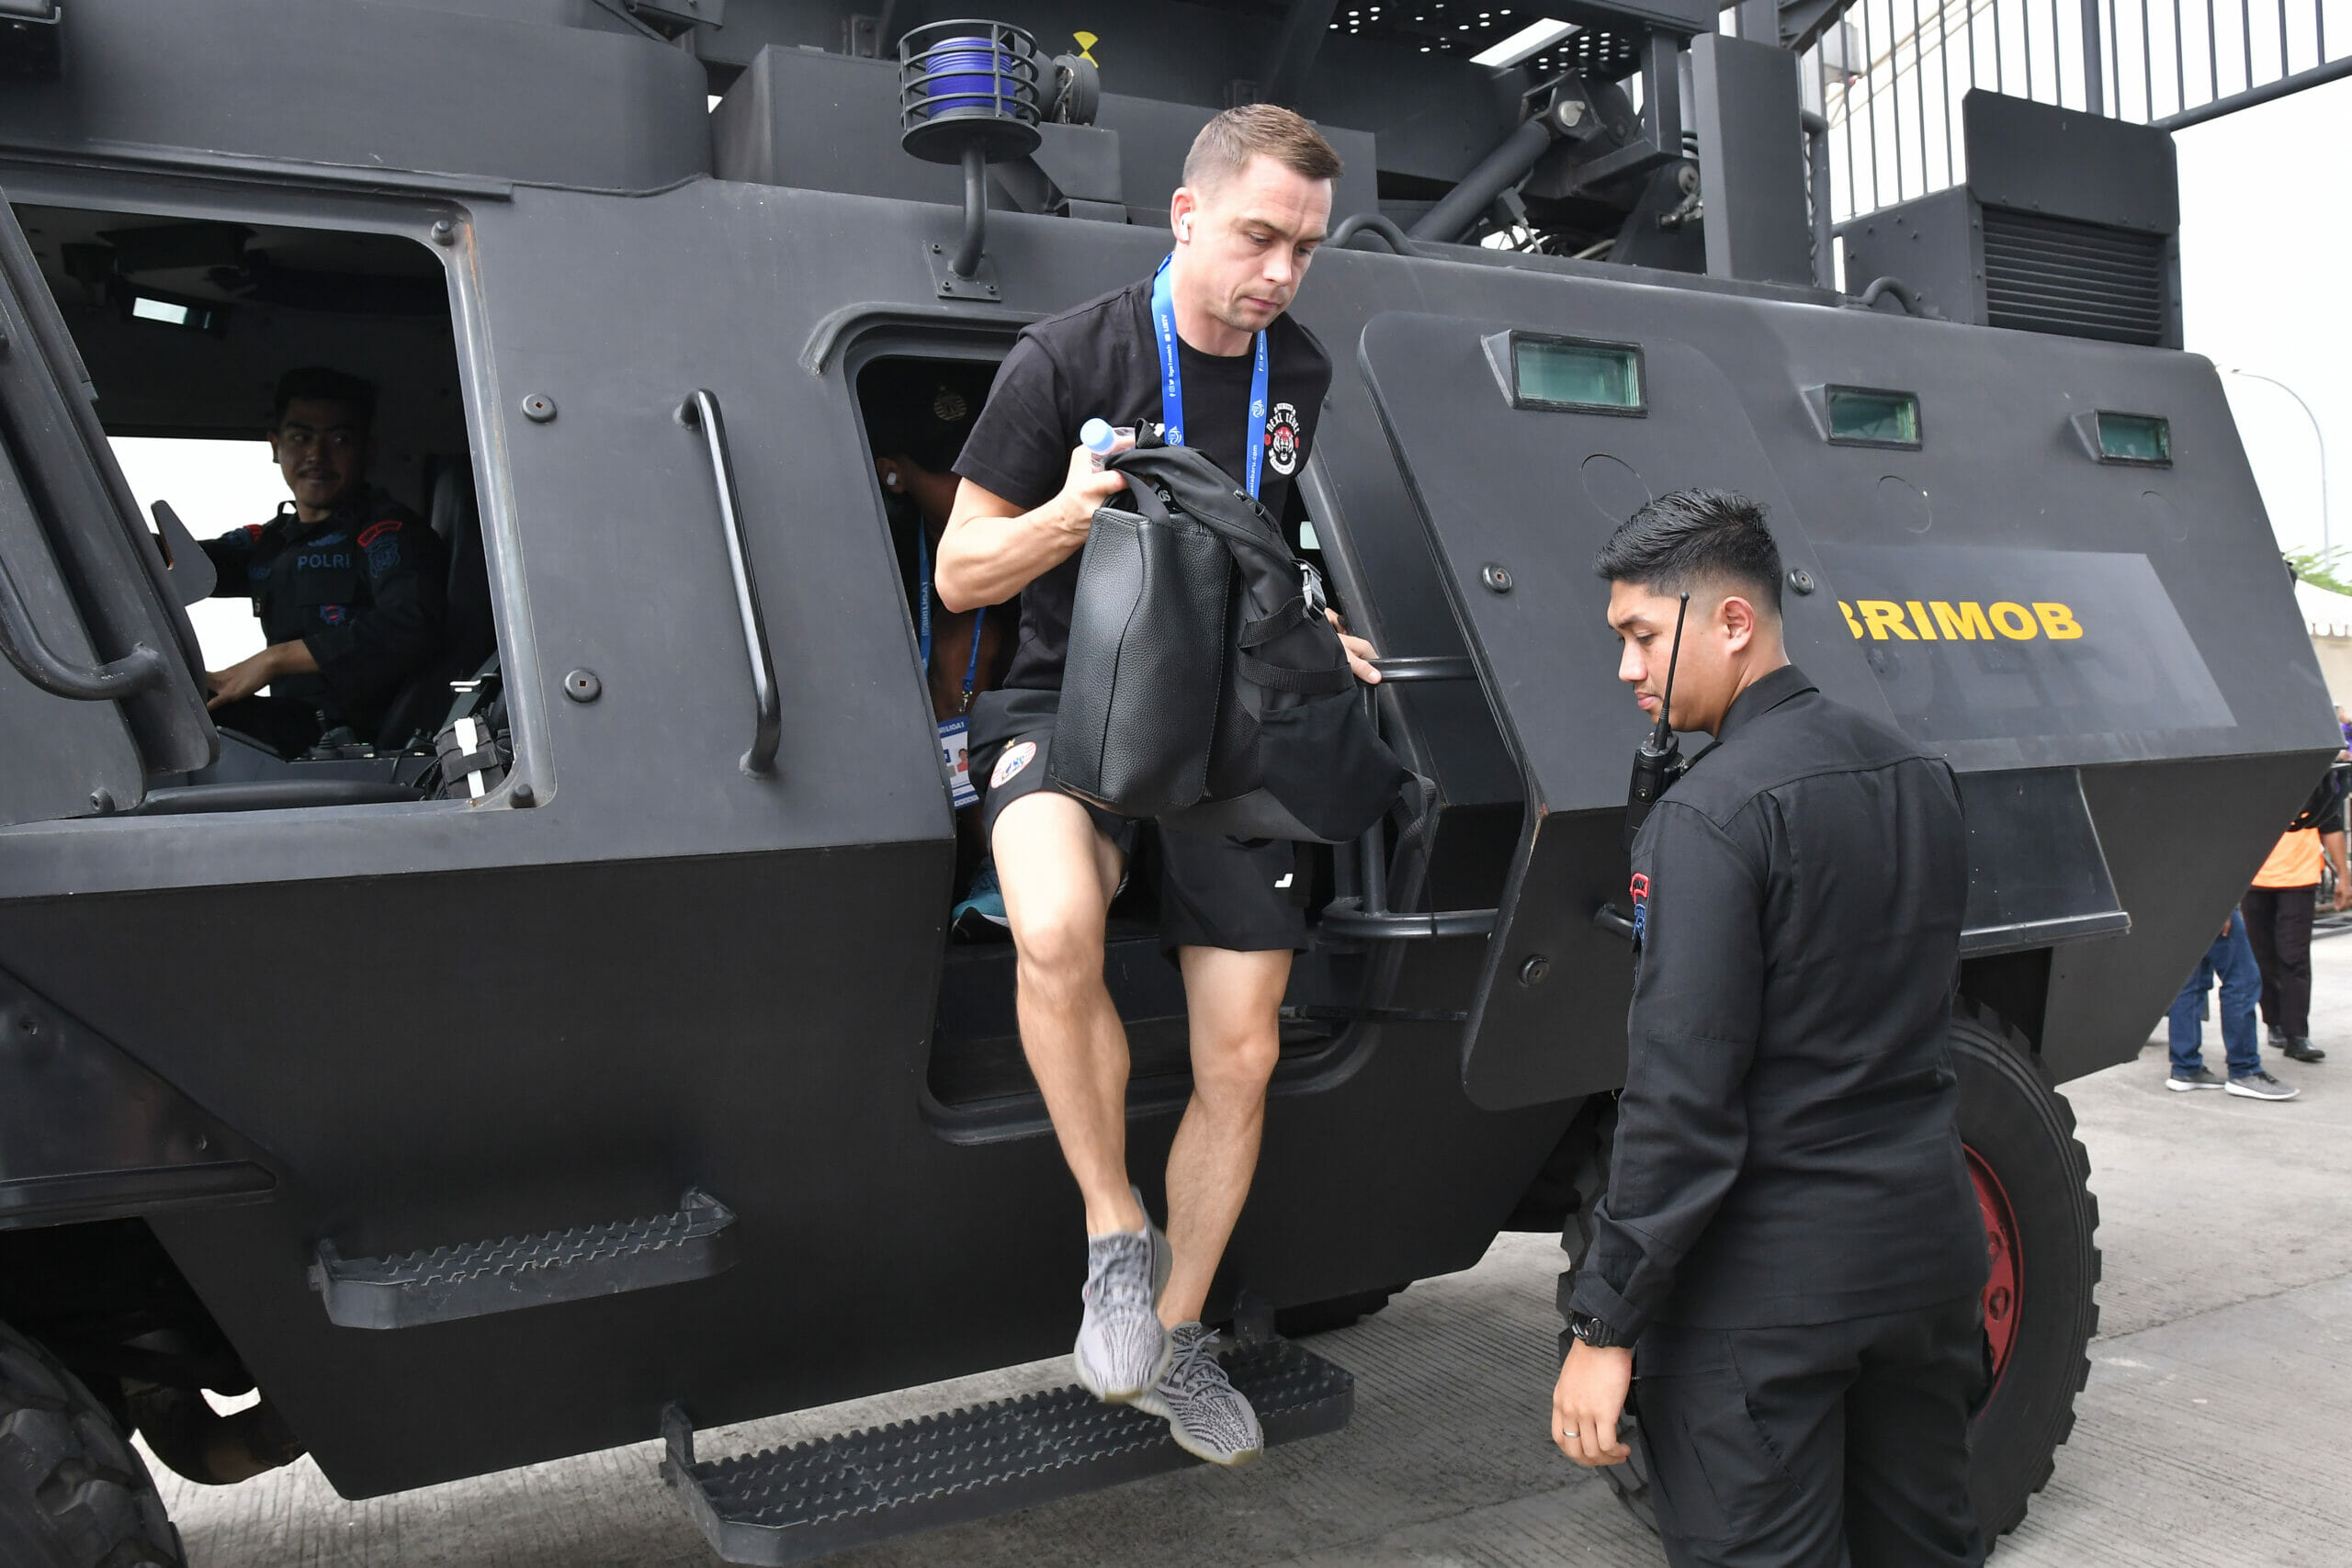 Laga Persita VS Persija di Stadion Indomilk Arena, Polisi Angkut Pemain Gunakan Barakuda